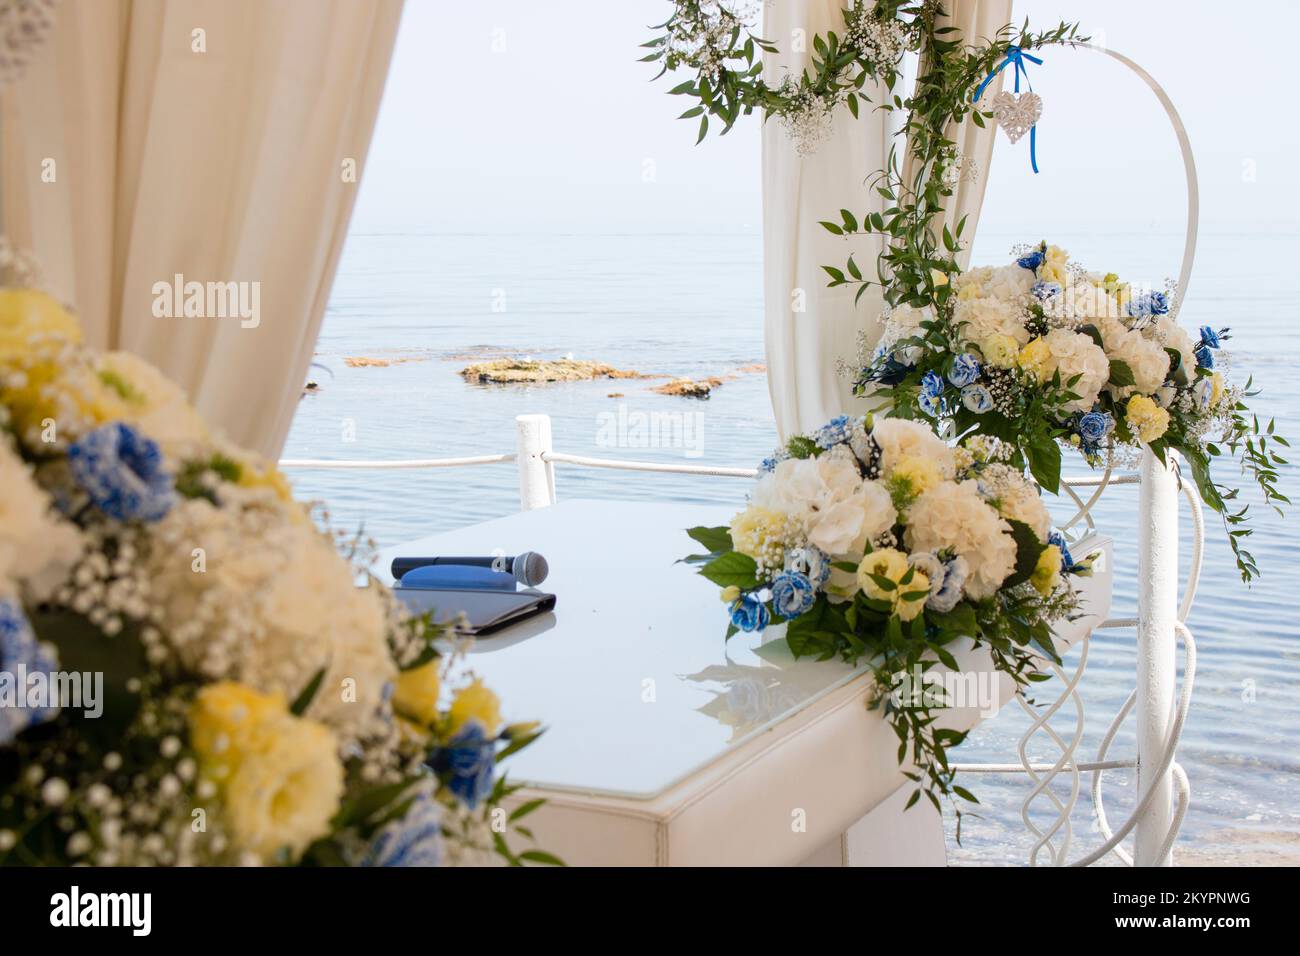 Celebrazione matrimonio civile sul mare, Civil wedding celebration on the sea Stock Photo